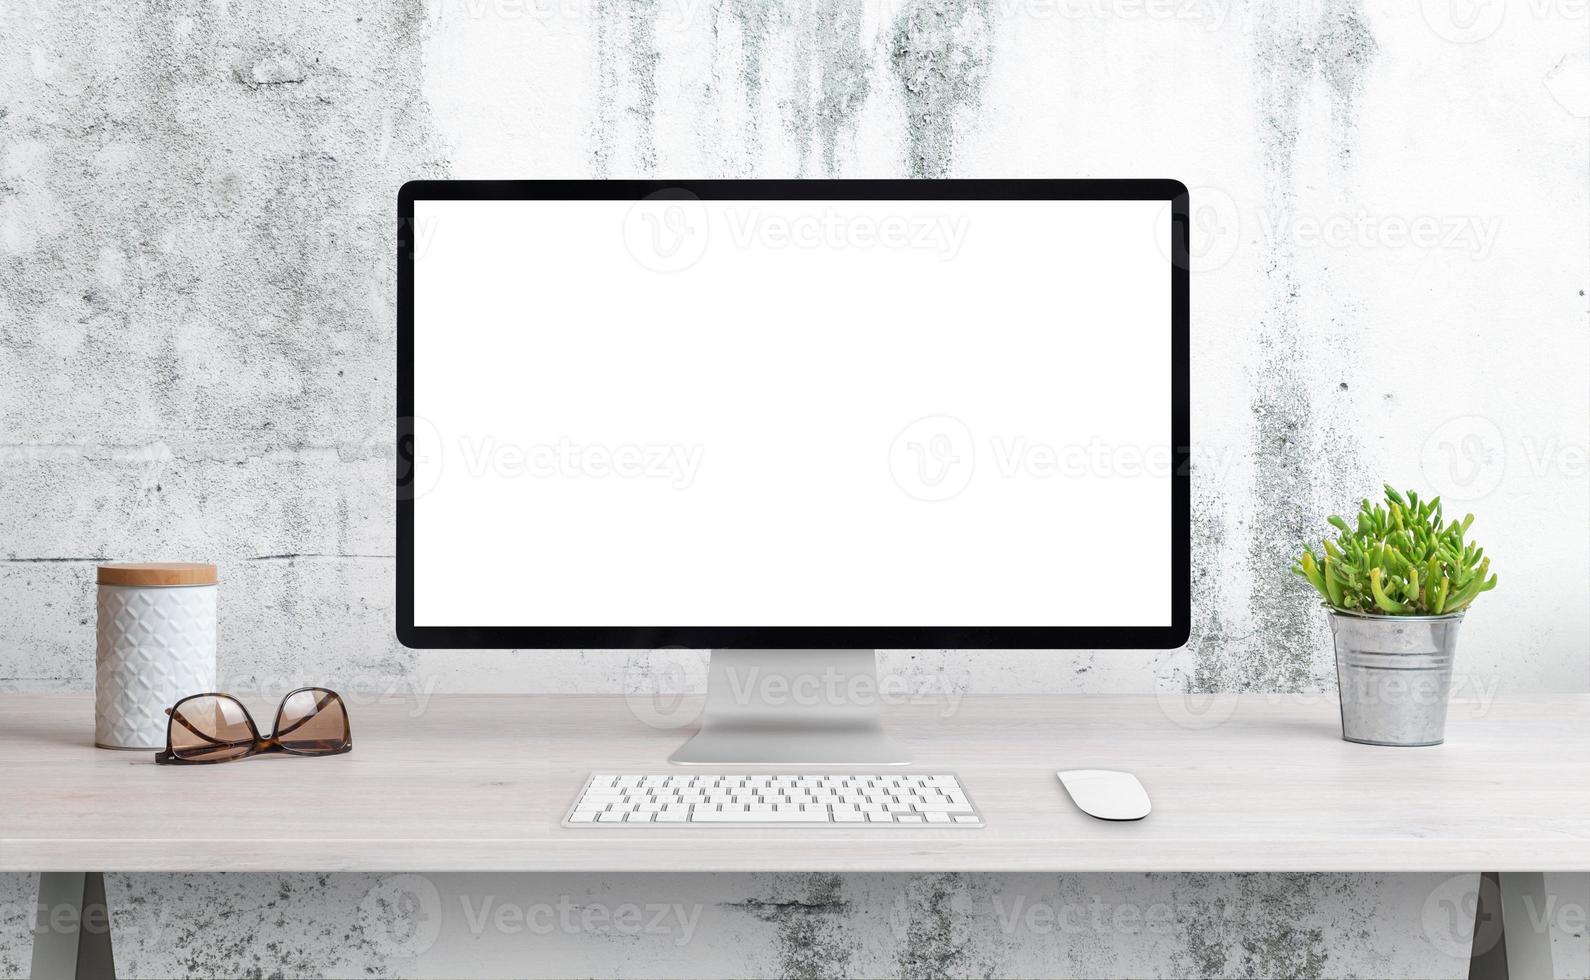 écran d'ordinateur sur le bureau avec écran isolé pour la maquette, présentation de la page wep. bureau propre avec plante, verres et boîte. mur rugueux blanc en arrière-plan photo